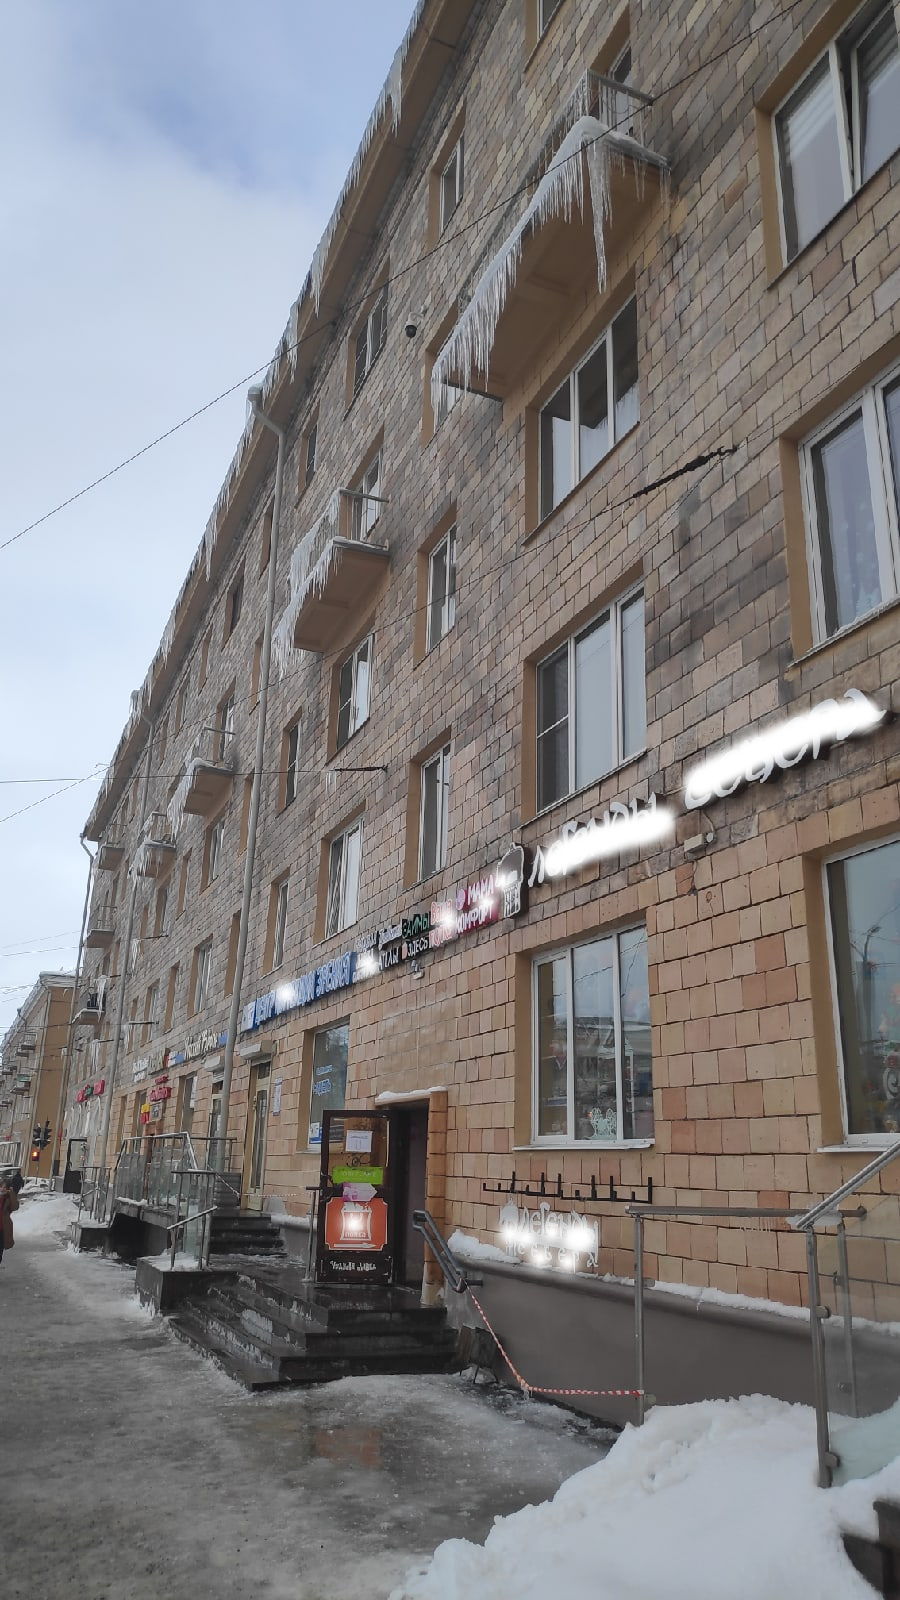 "Смертельный номер": Лед на ступеньках и сосульки над головой угрожают посетителям магазина в центре Петрозаводска